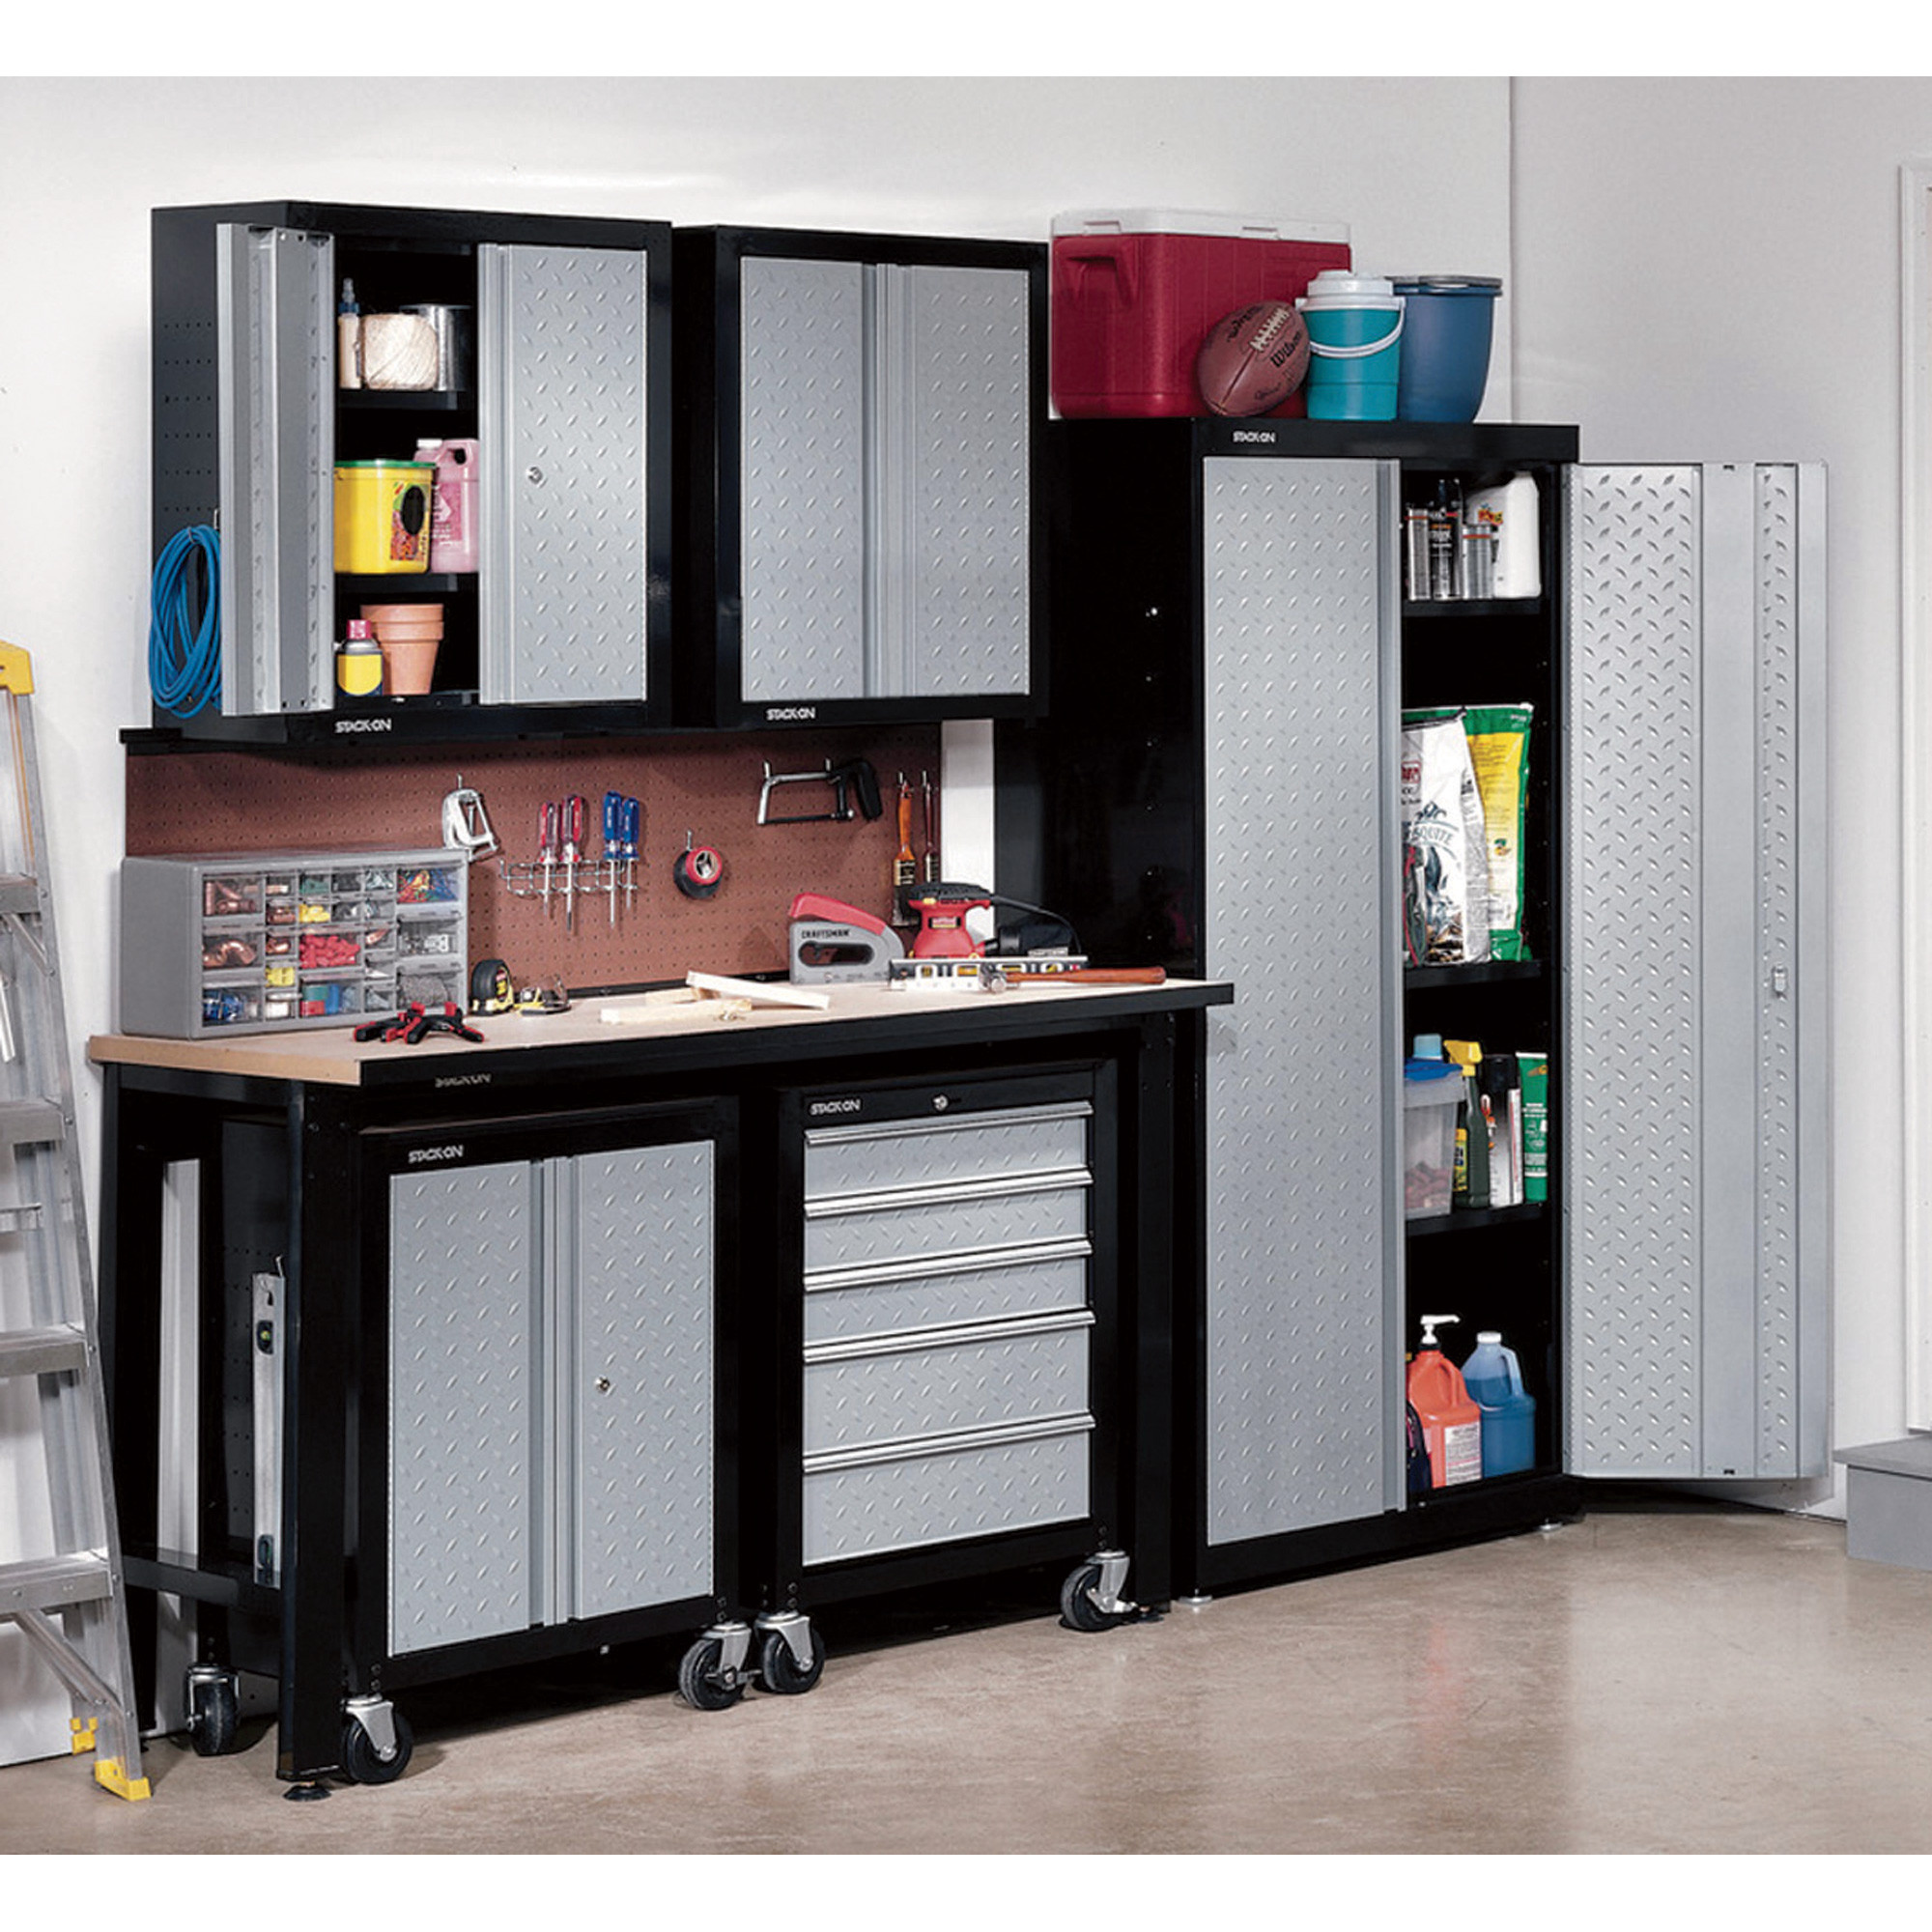 Best ideas about Best Garage Storage Systems
. Save or Pin Nice Best Garage Storage Cabinets 8 Garage Tool Storage Now.